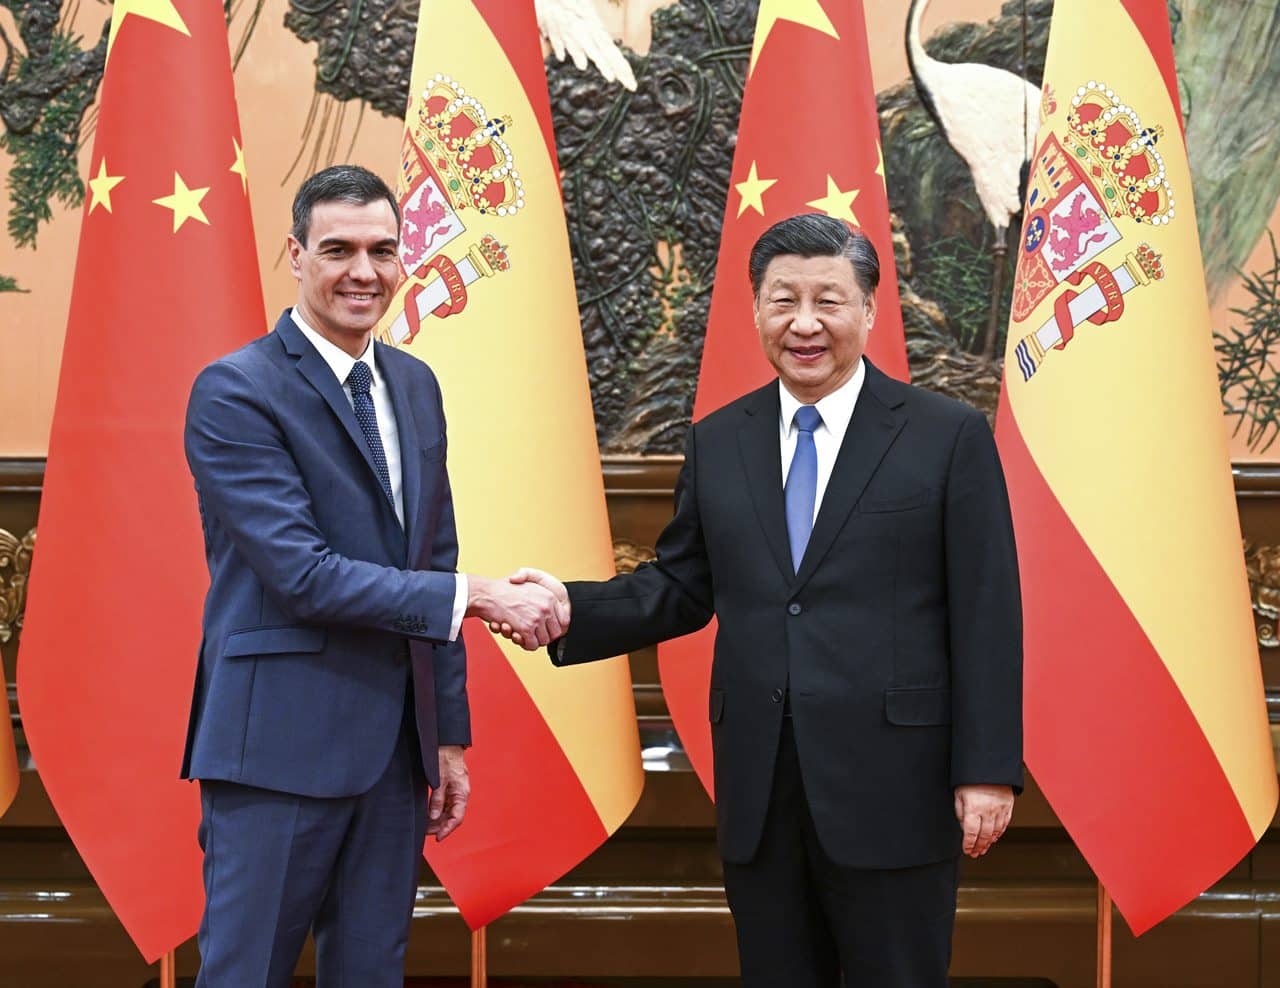 Pedro Sánchez y Xi Jinging se saludan antes de iniciar las conversaciones. EP